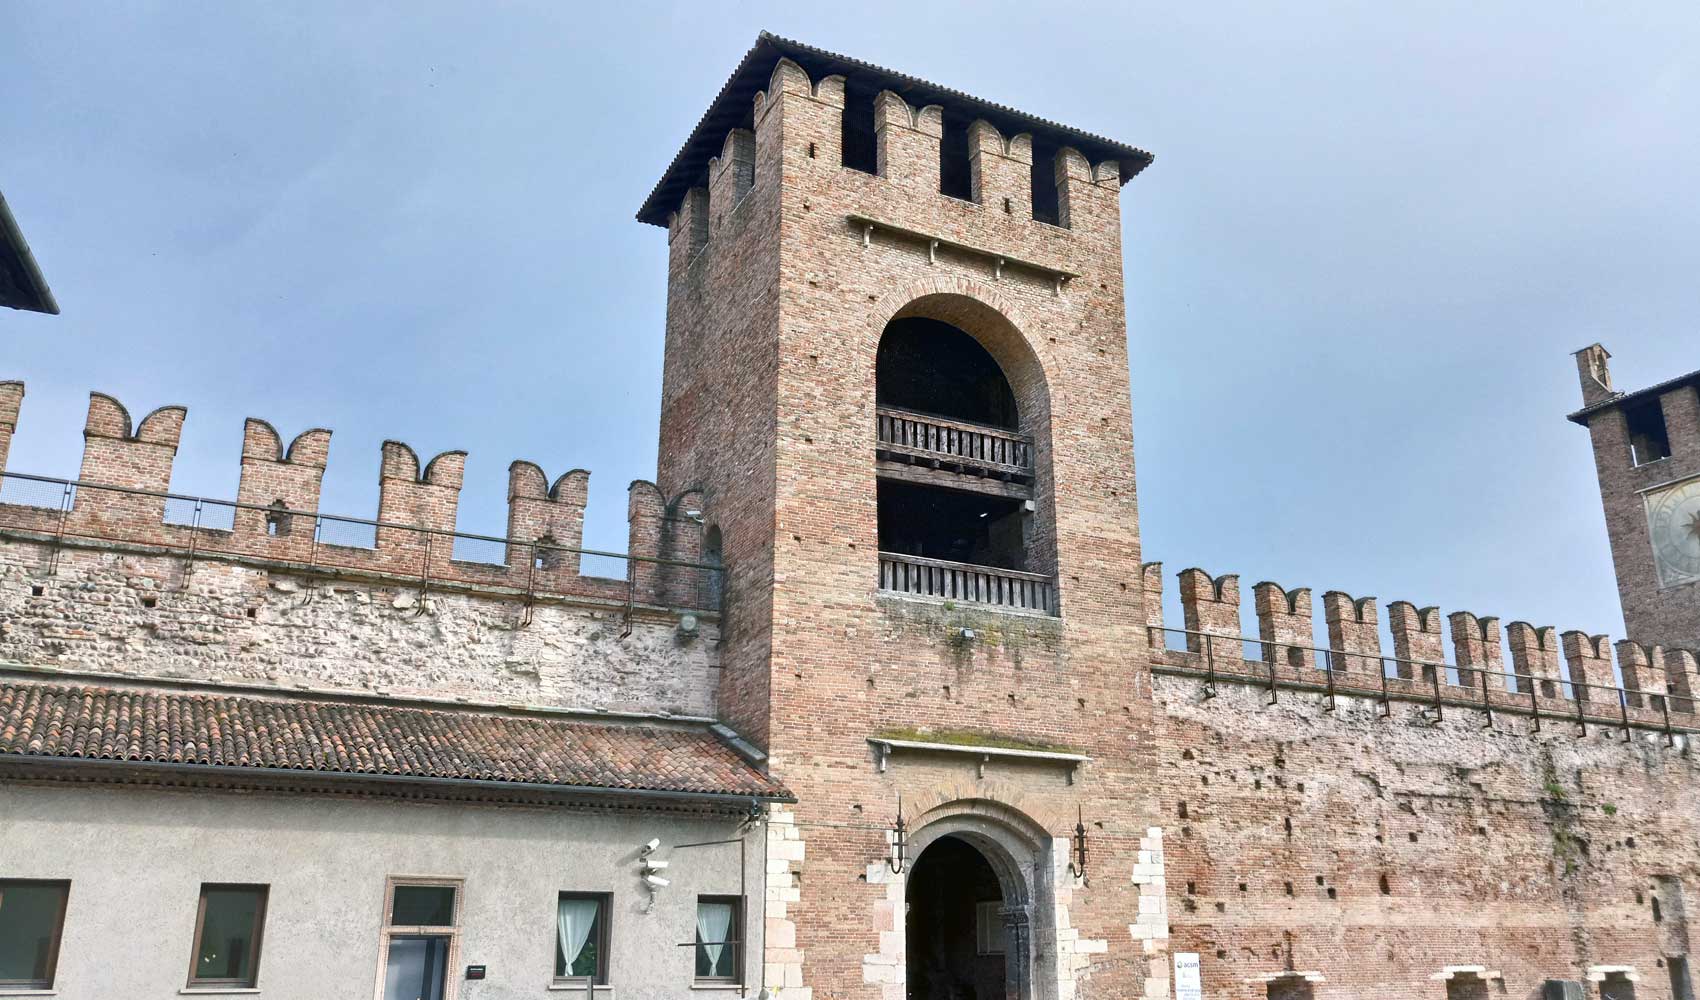 Die Aussenmauer mit Zinnen der Stadtfestung Castelvecchio von Verona.